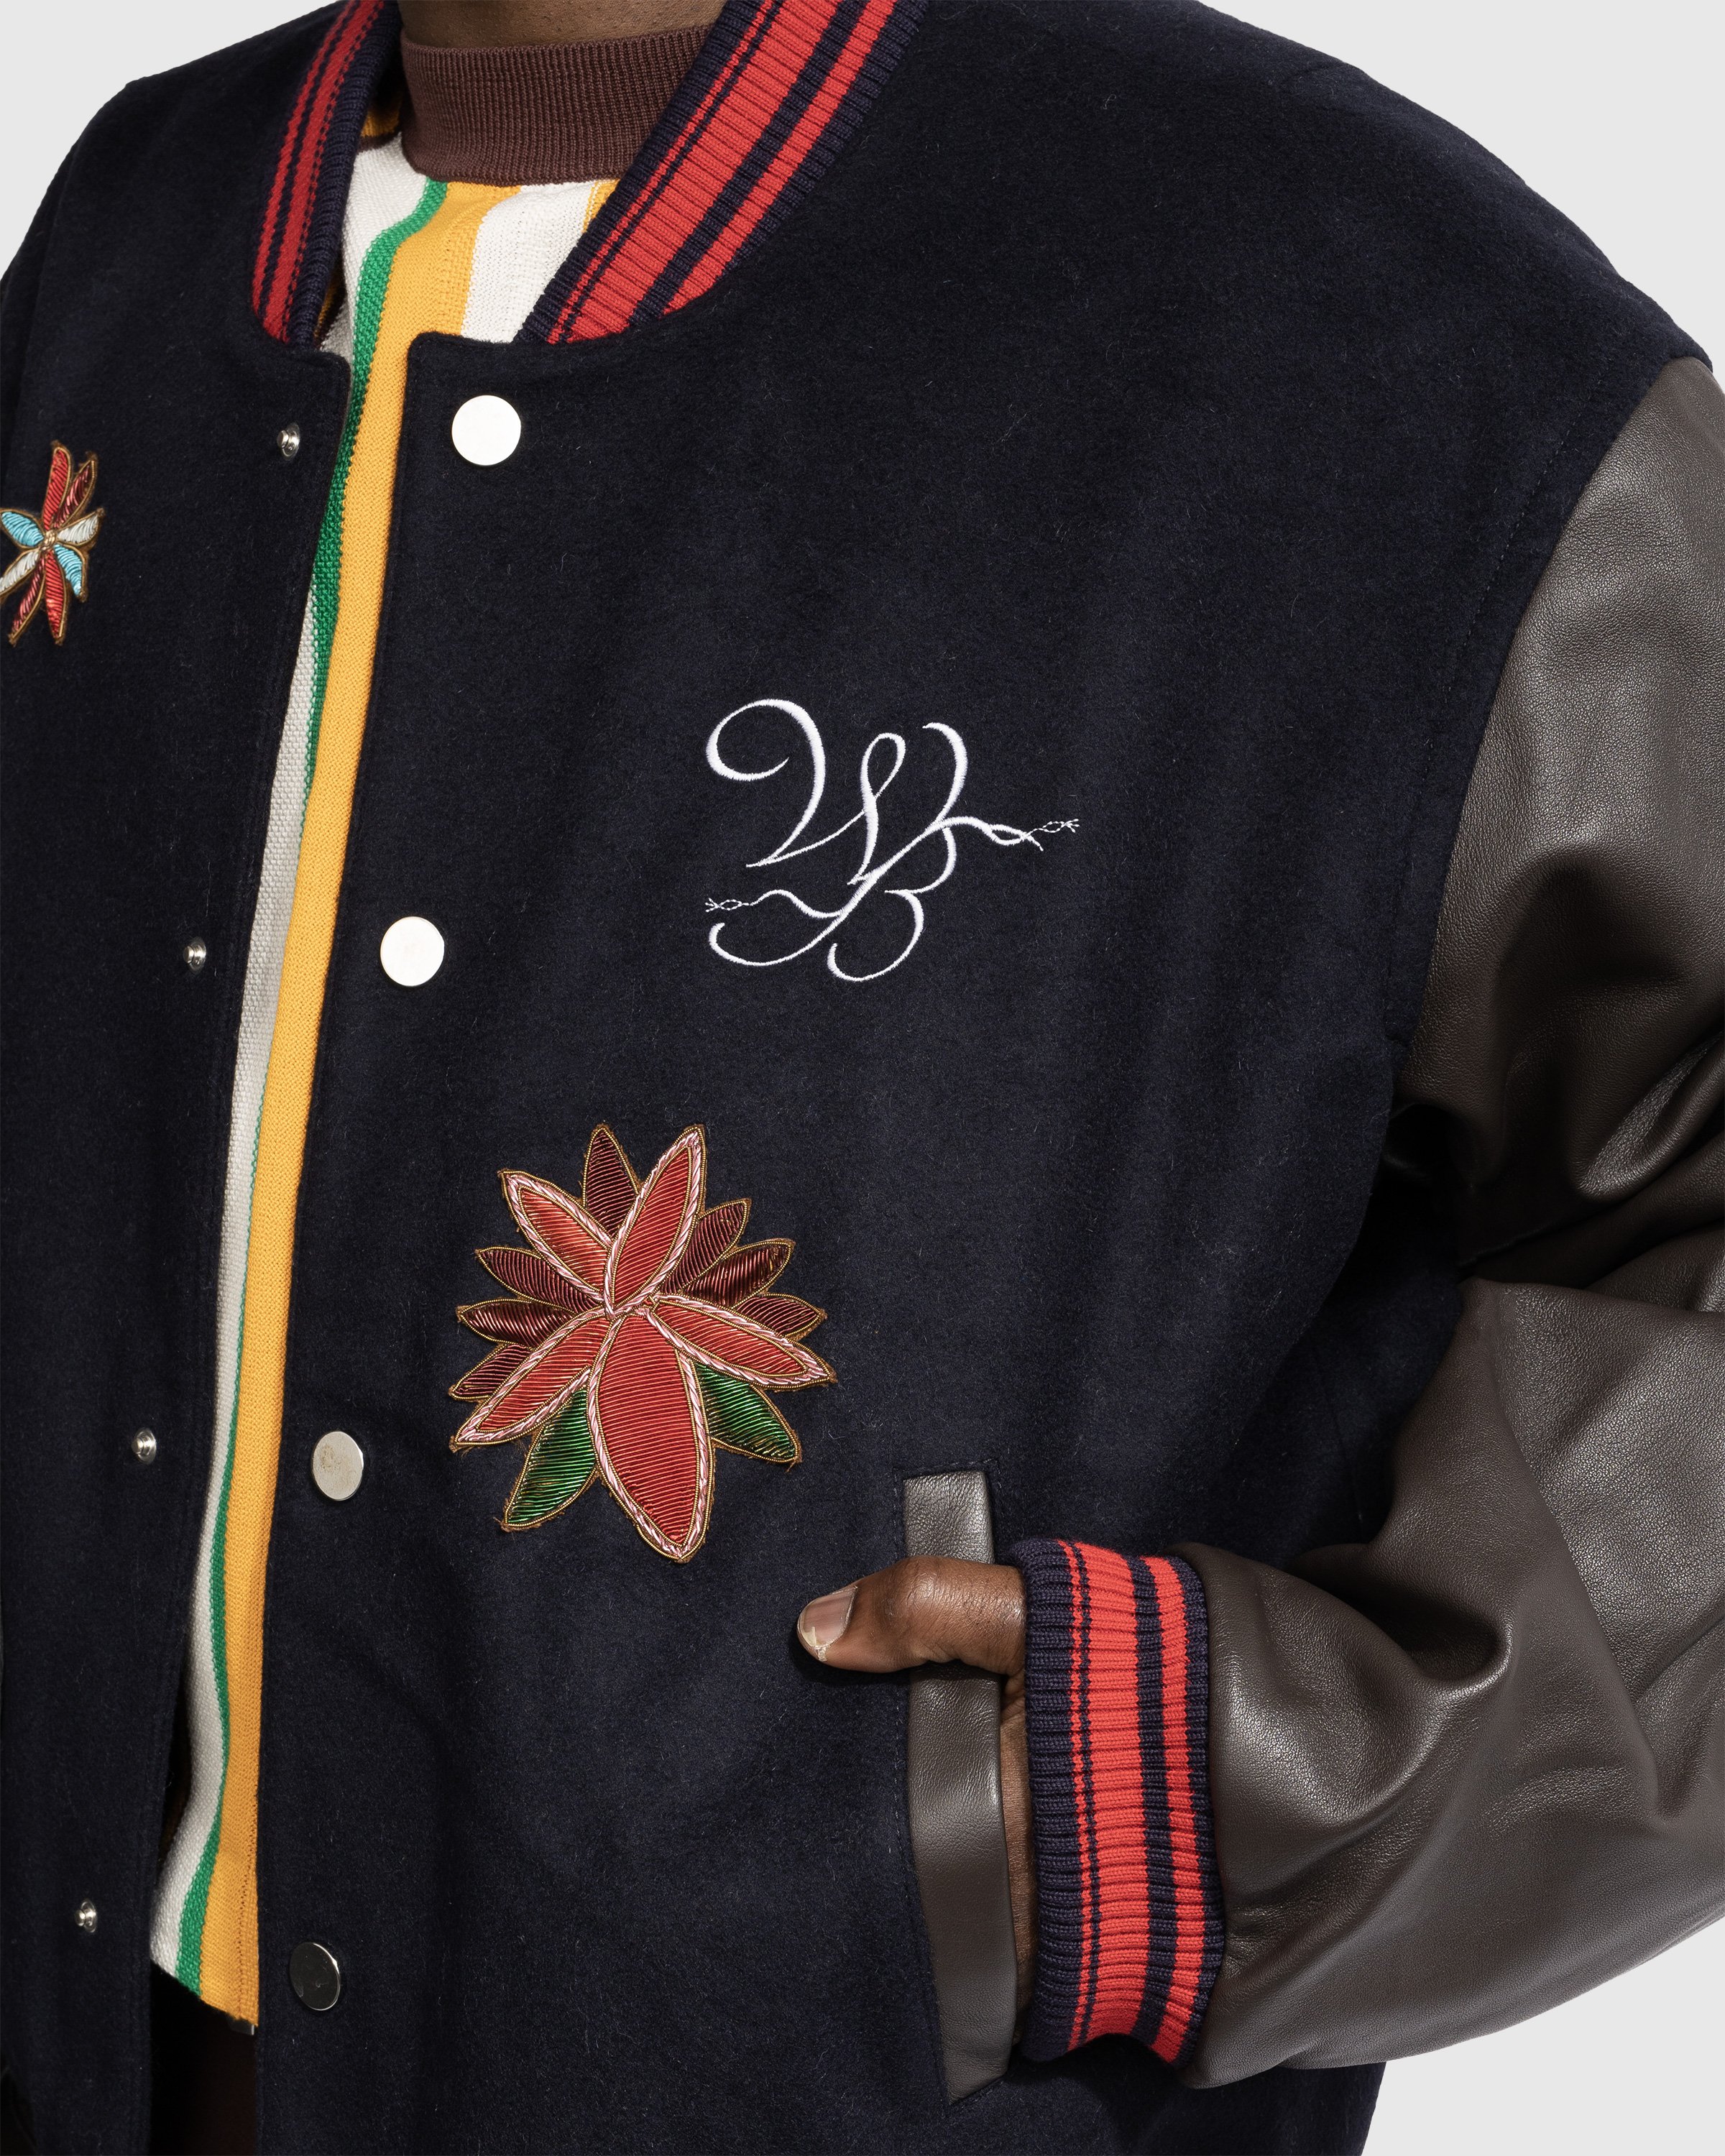 Wales Bonner - Ascend Varsity Jacket - Clothing - Brown - Image 5